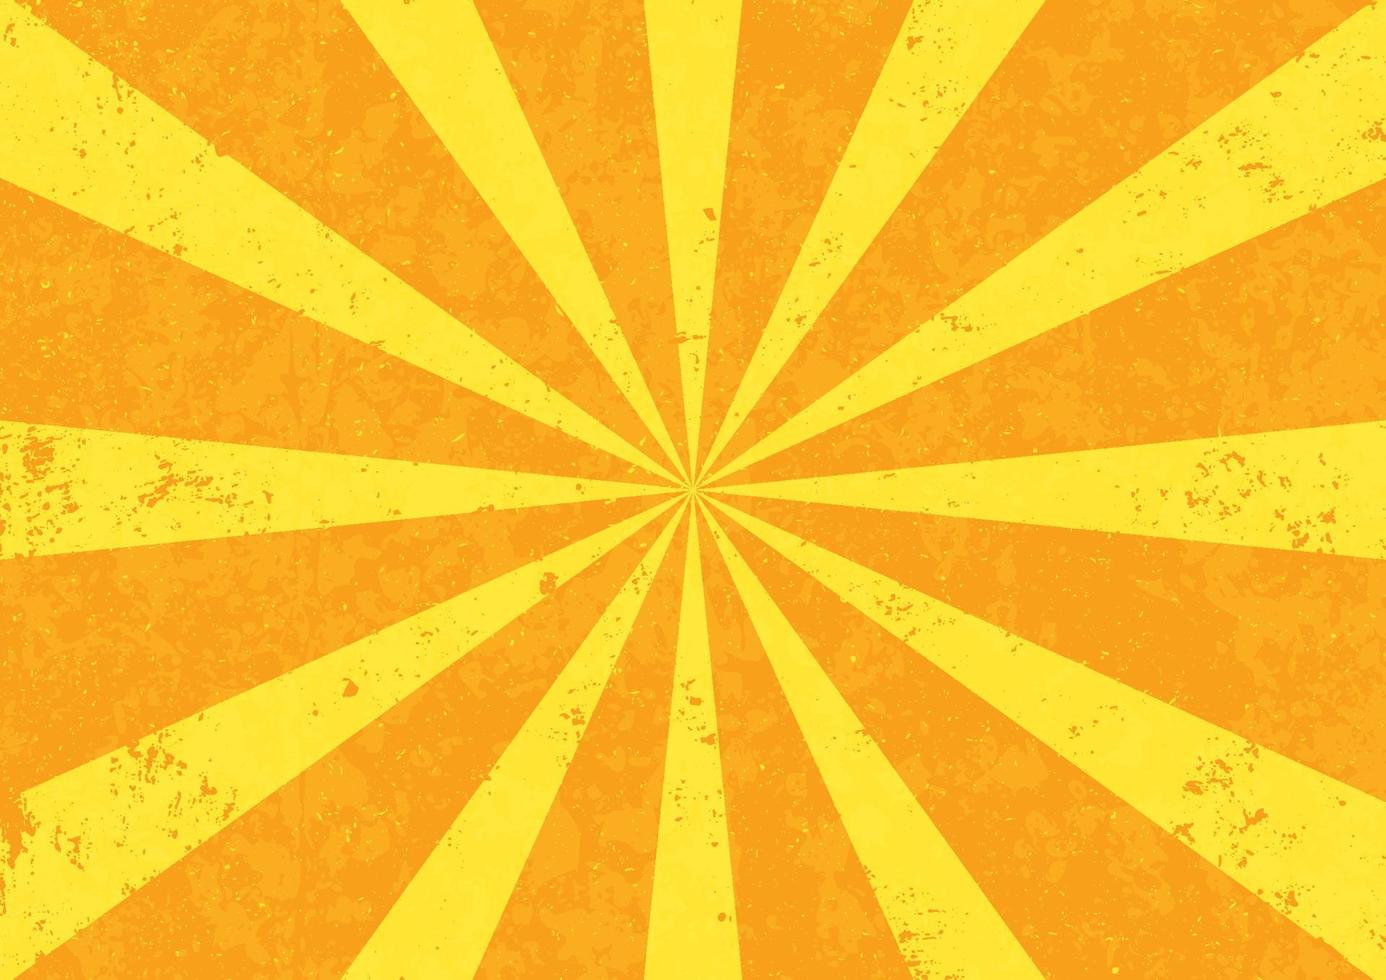 Sonnendurchbruch mit Grunge-Textur-Hintergrund vektor